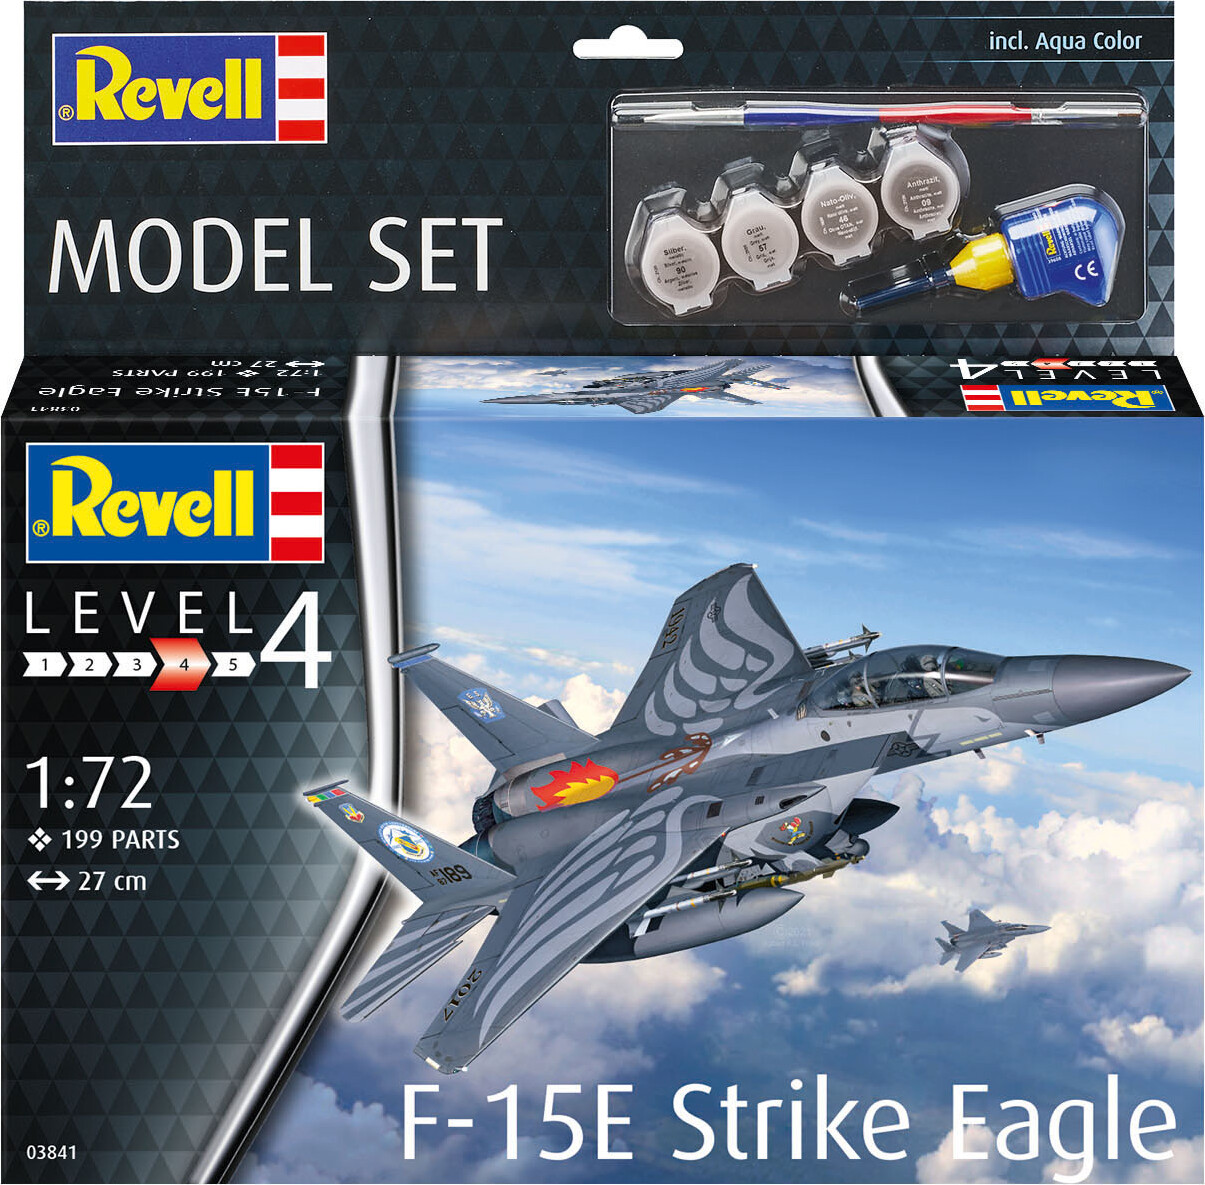 Billede af Revell - F-15e Strike Eagle Modelfly - 1:72 - Level 4 - 63841